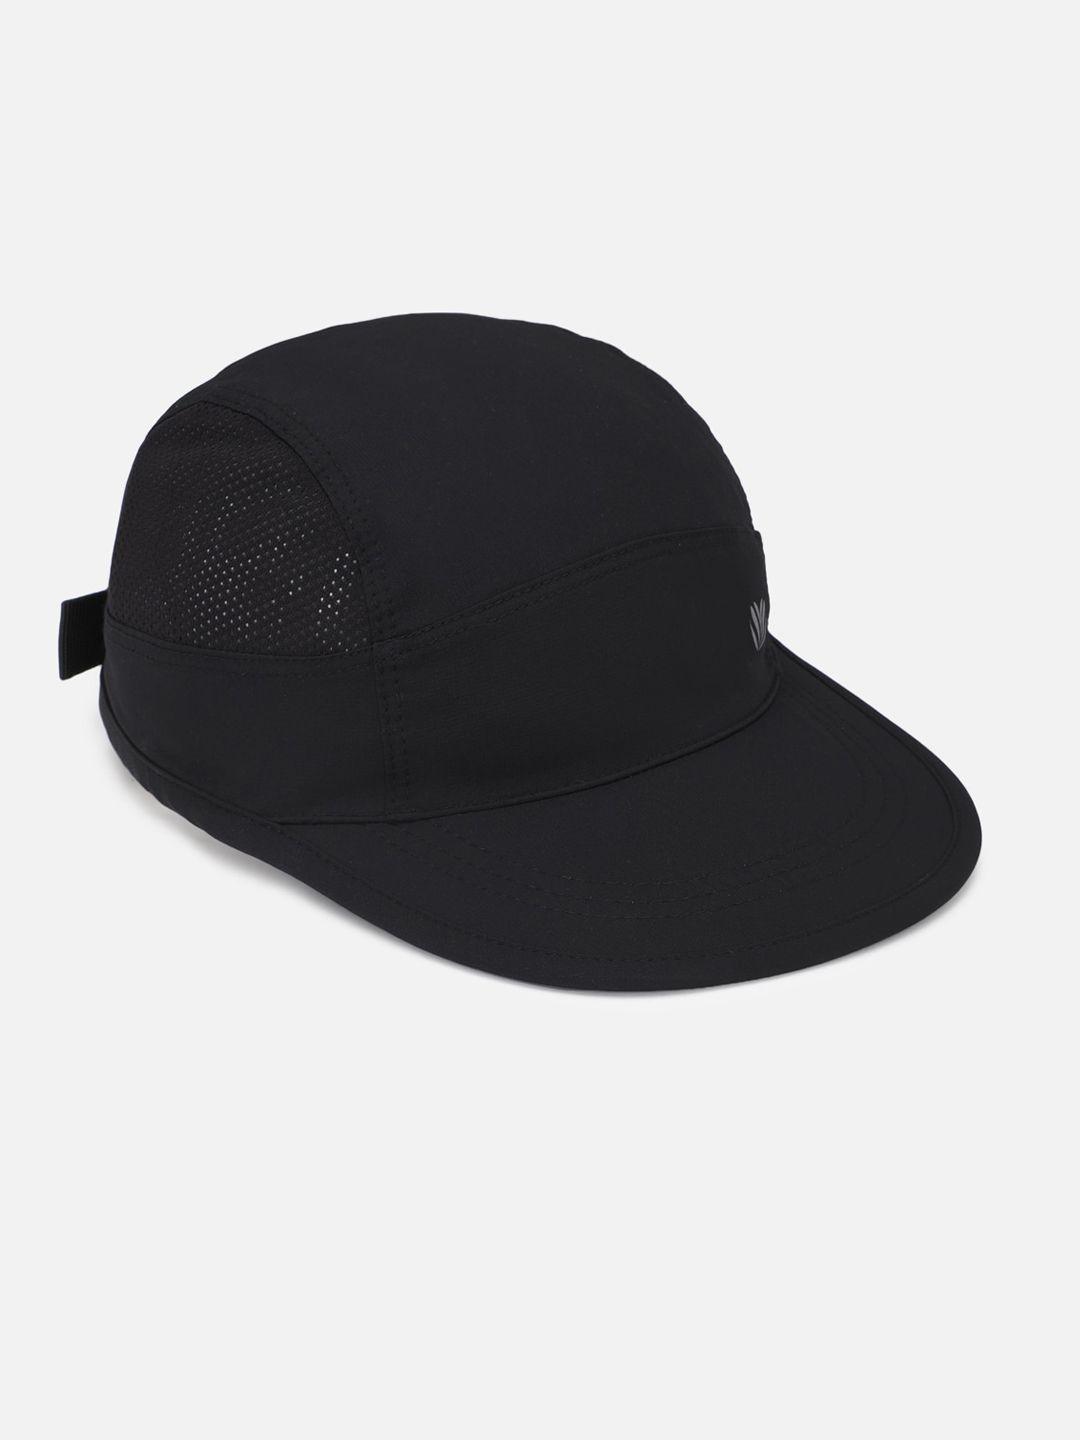 forever-21-men-black-baseball-cap